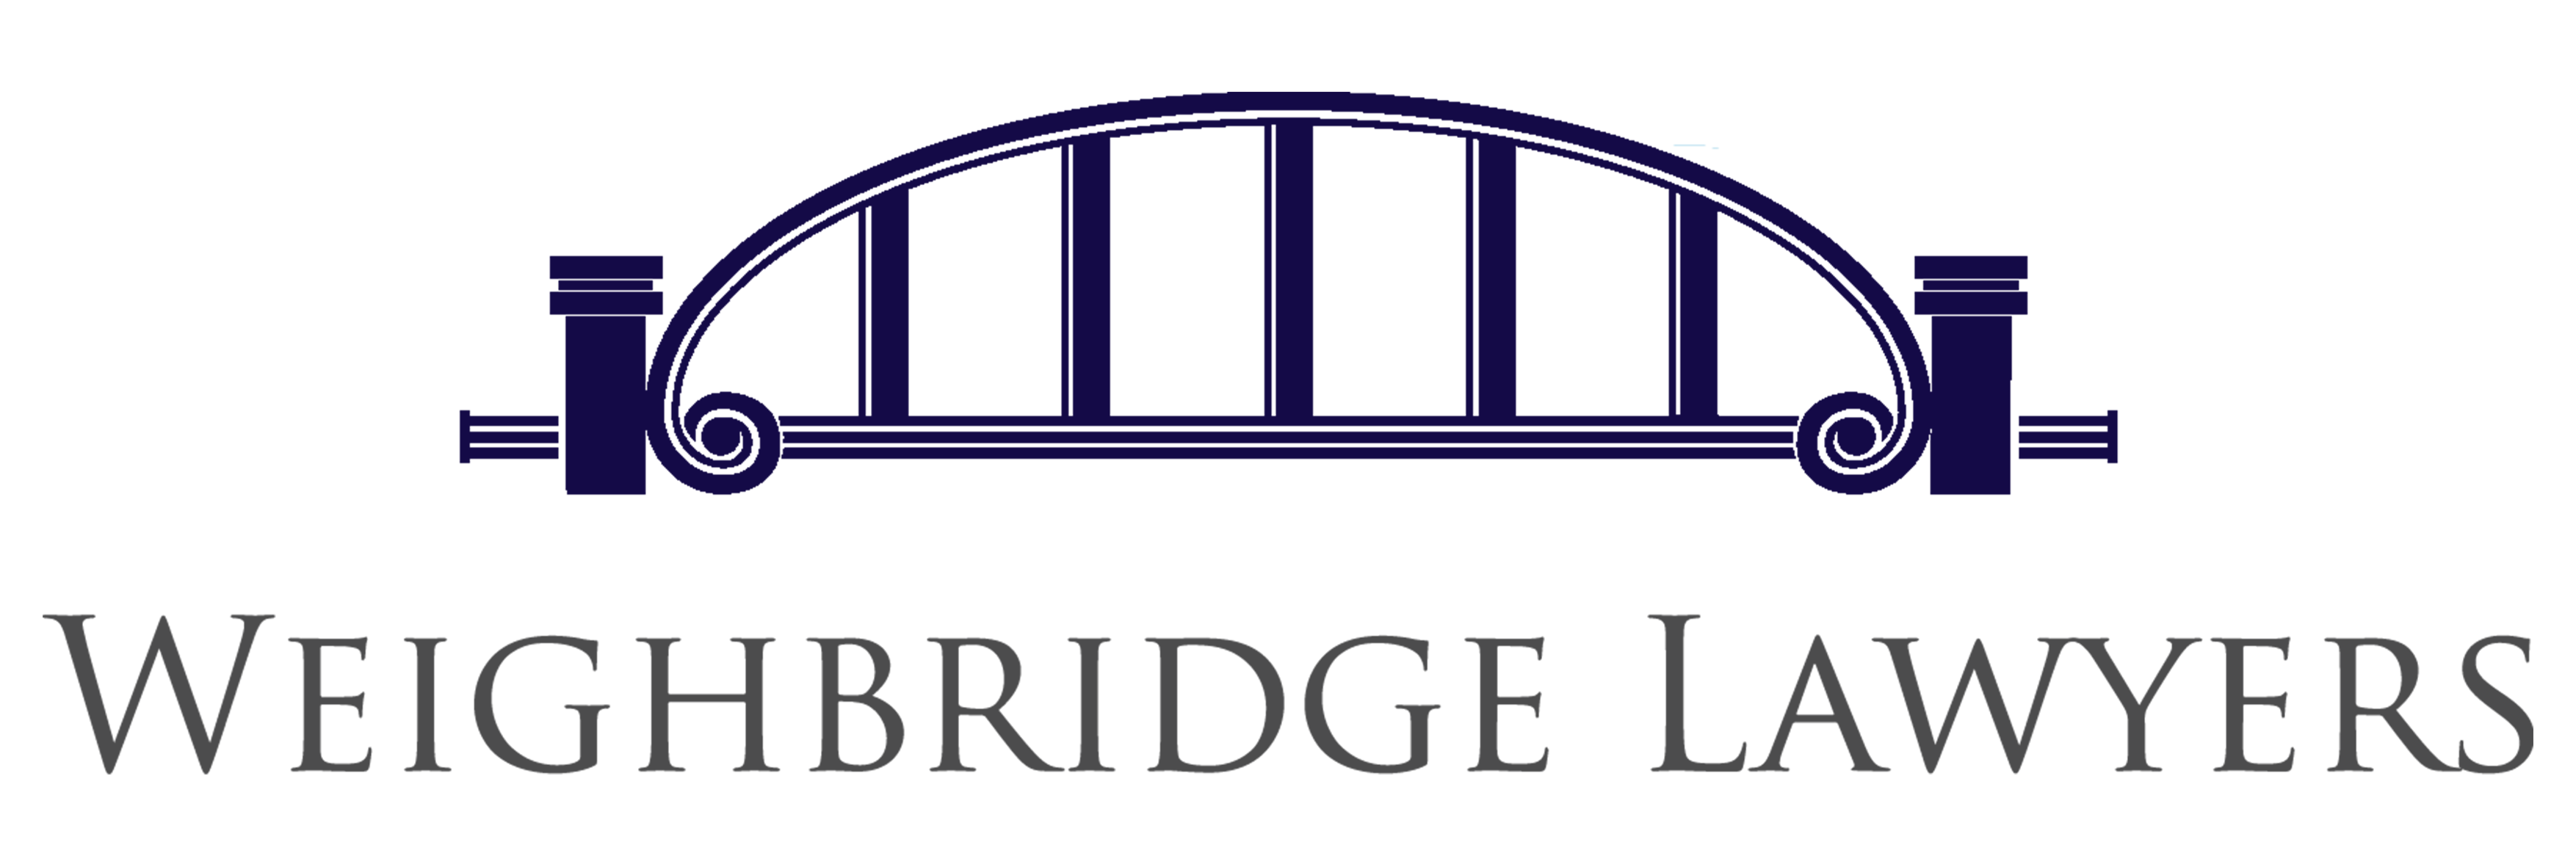 Company logo of Weighbridge Lawyers